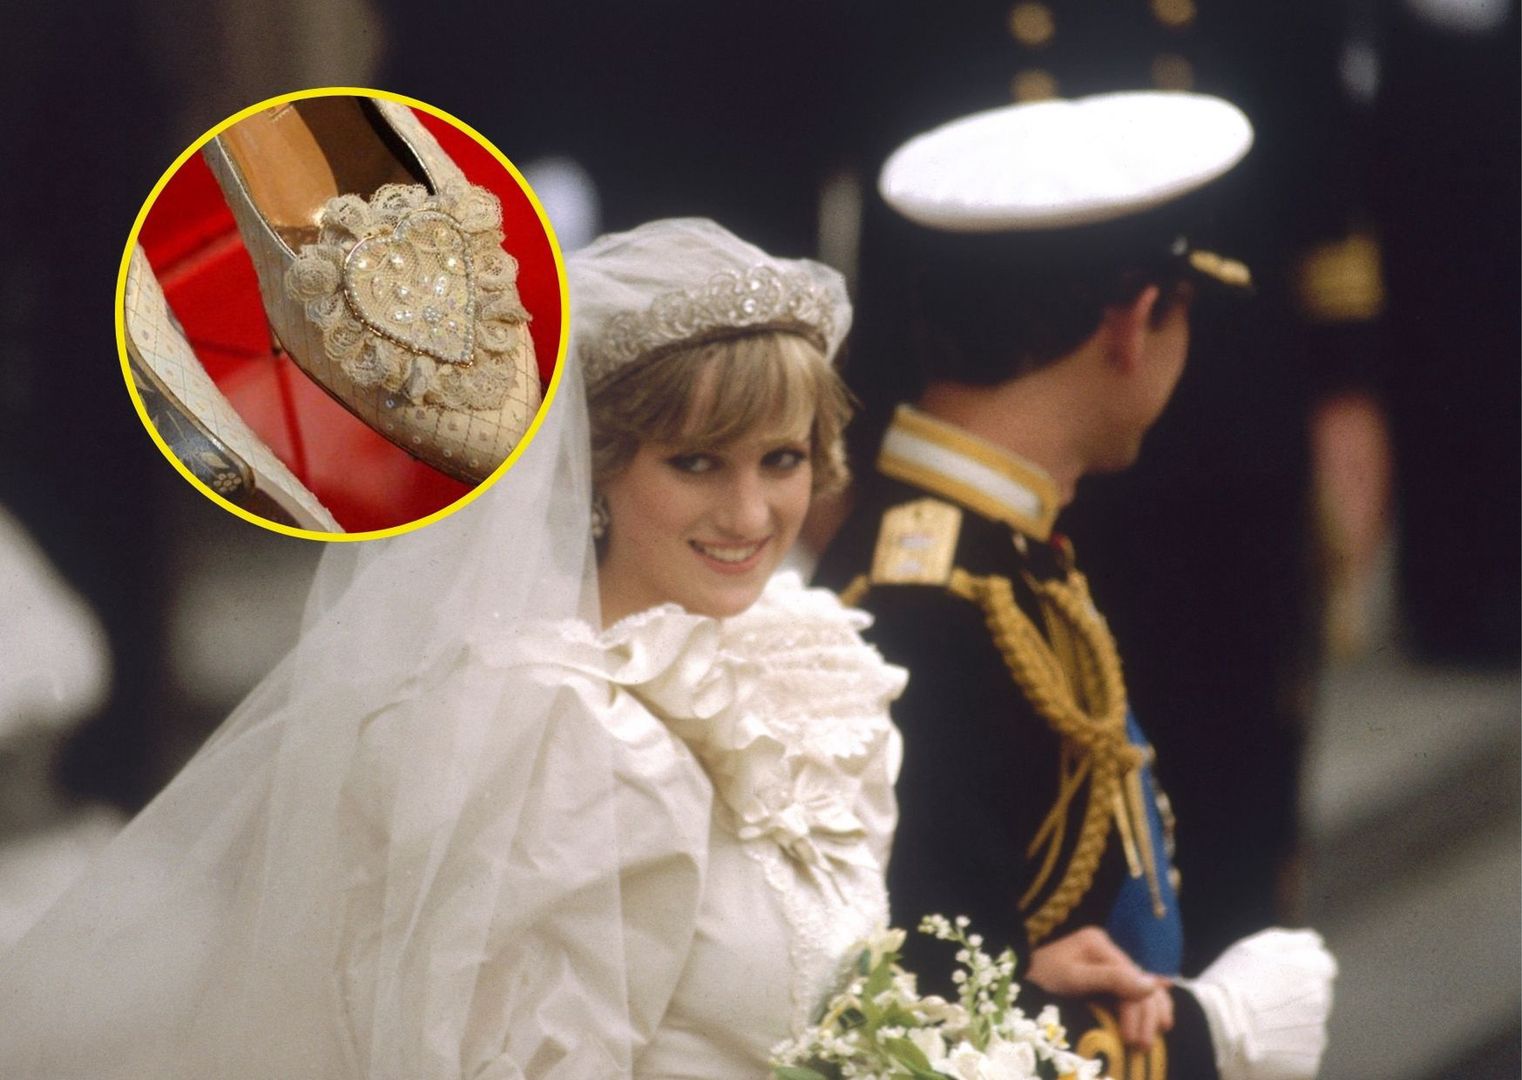 Ślubne buty księżnej Diany zawierały ukrytą wiadomość. Prawda wyszła na jaw po latach